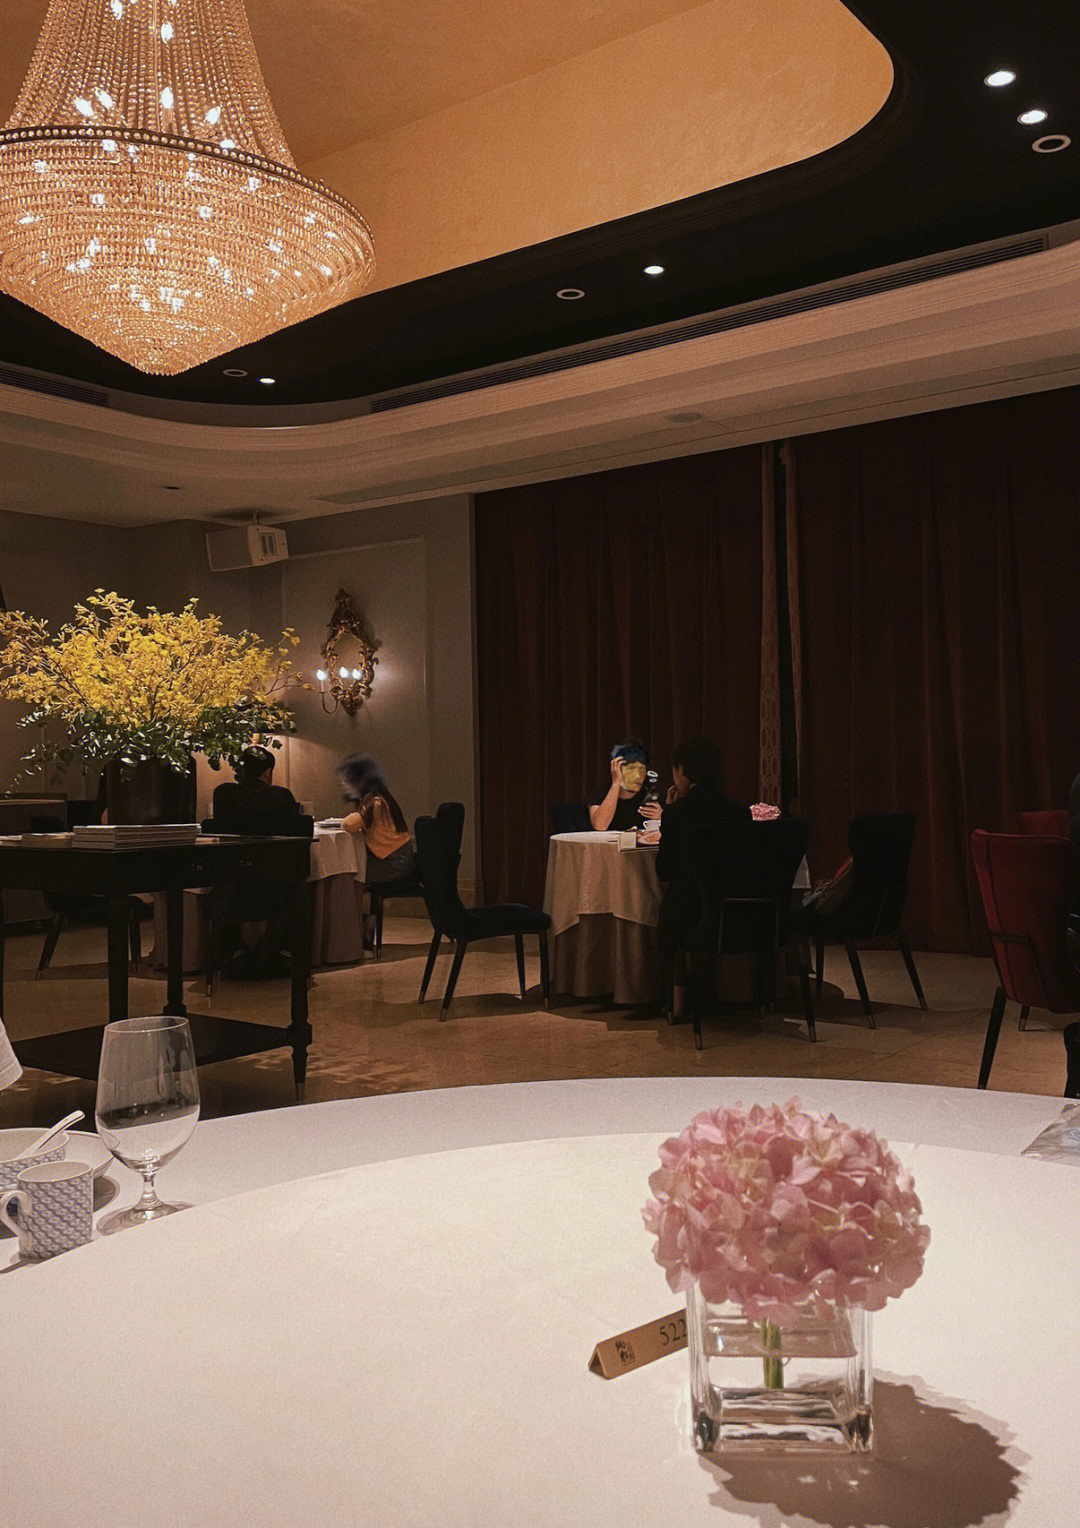 但怎么说也是鼎鼎大名的炳胜公馆,就也算是早茶系列里的吧～作为广州